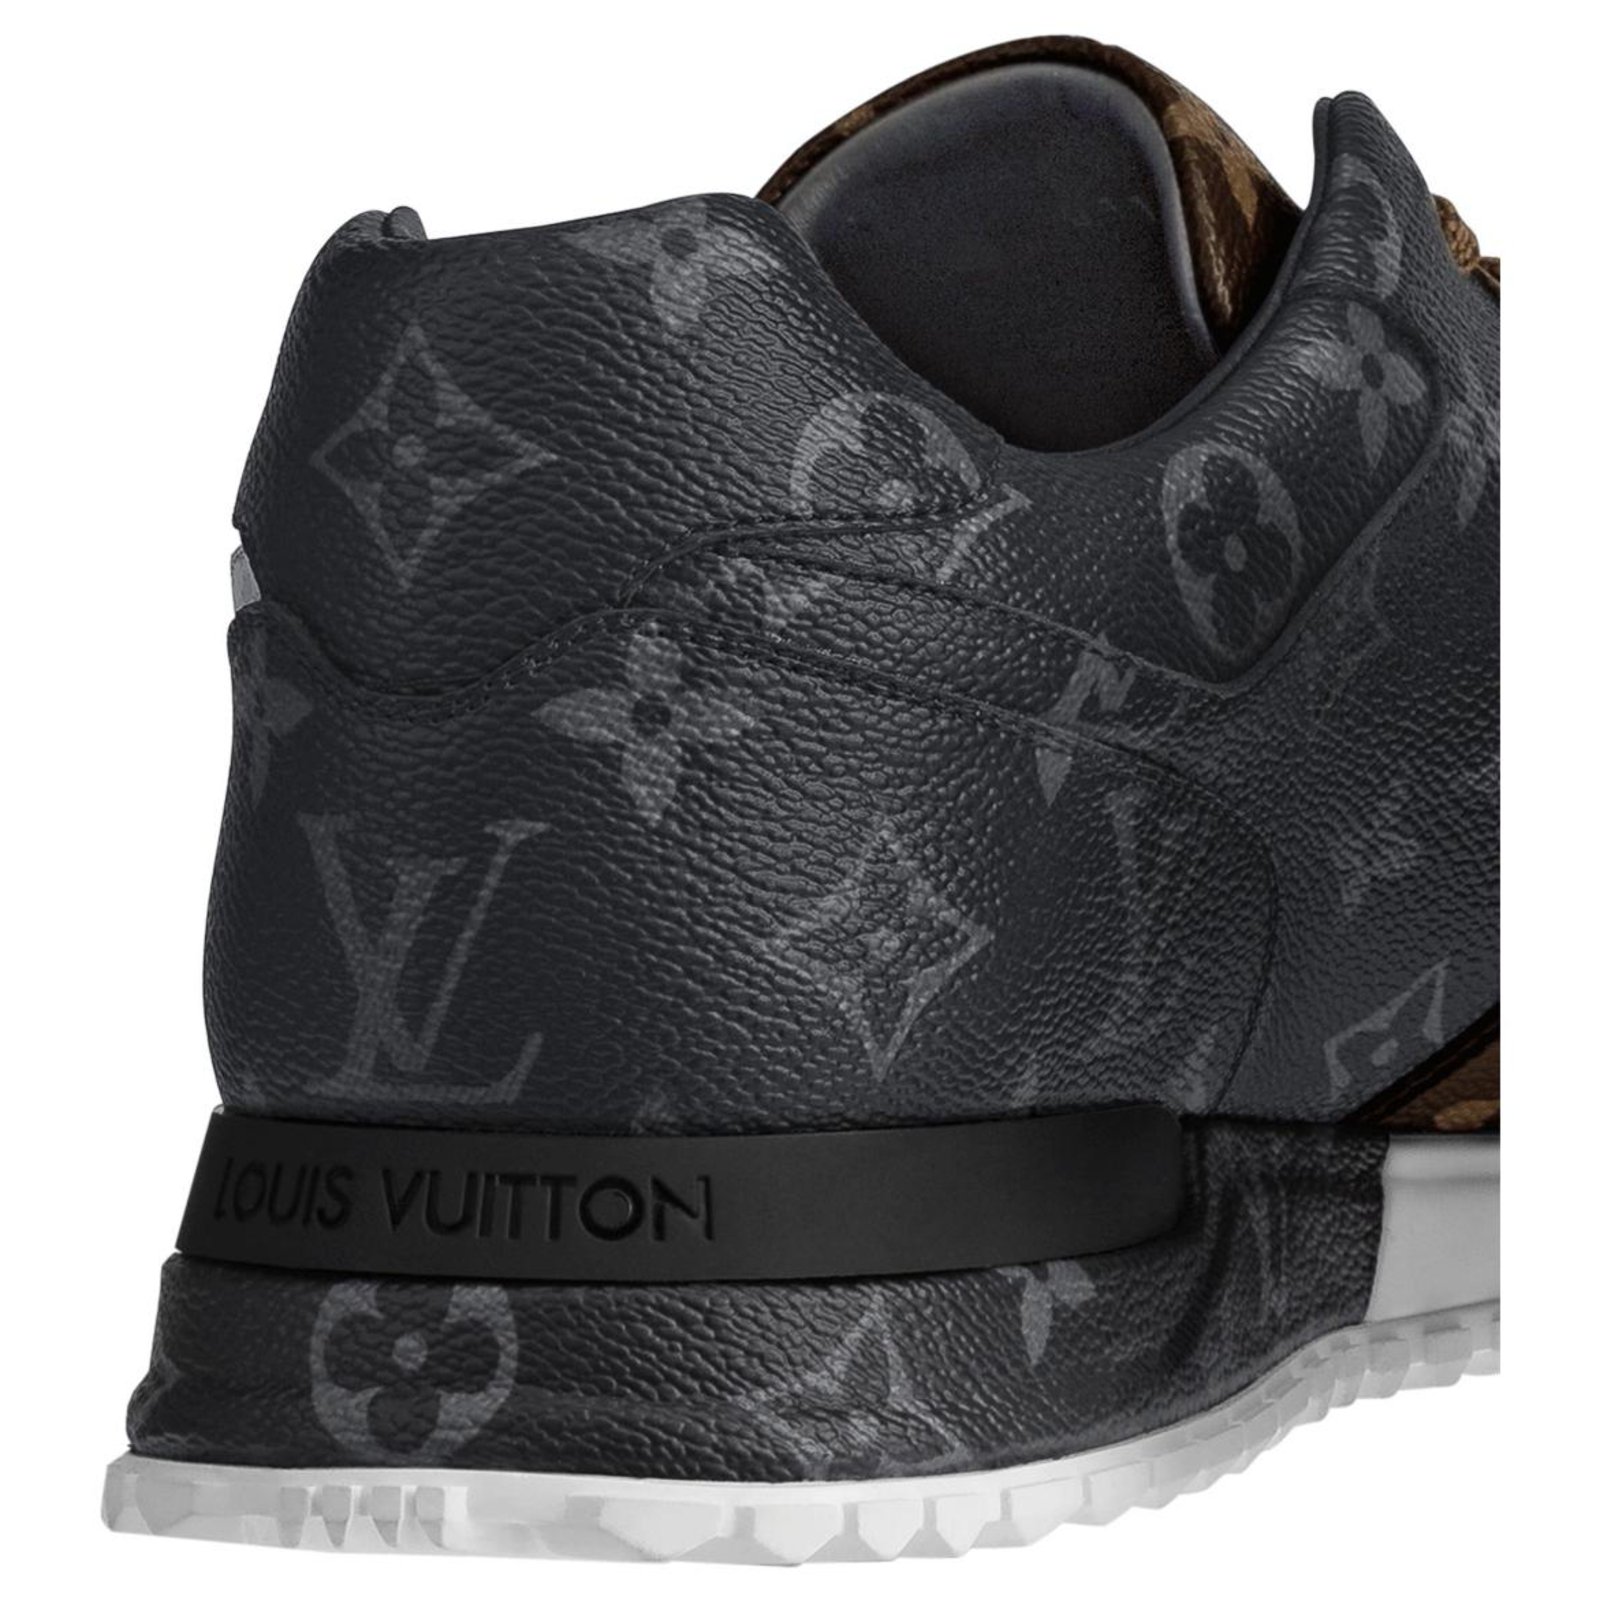 Louis Vuitton Mens Shoes 2020